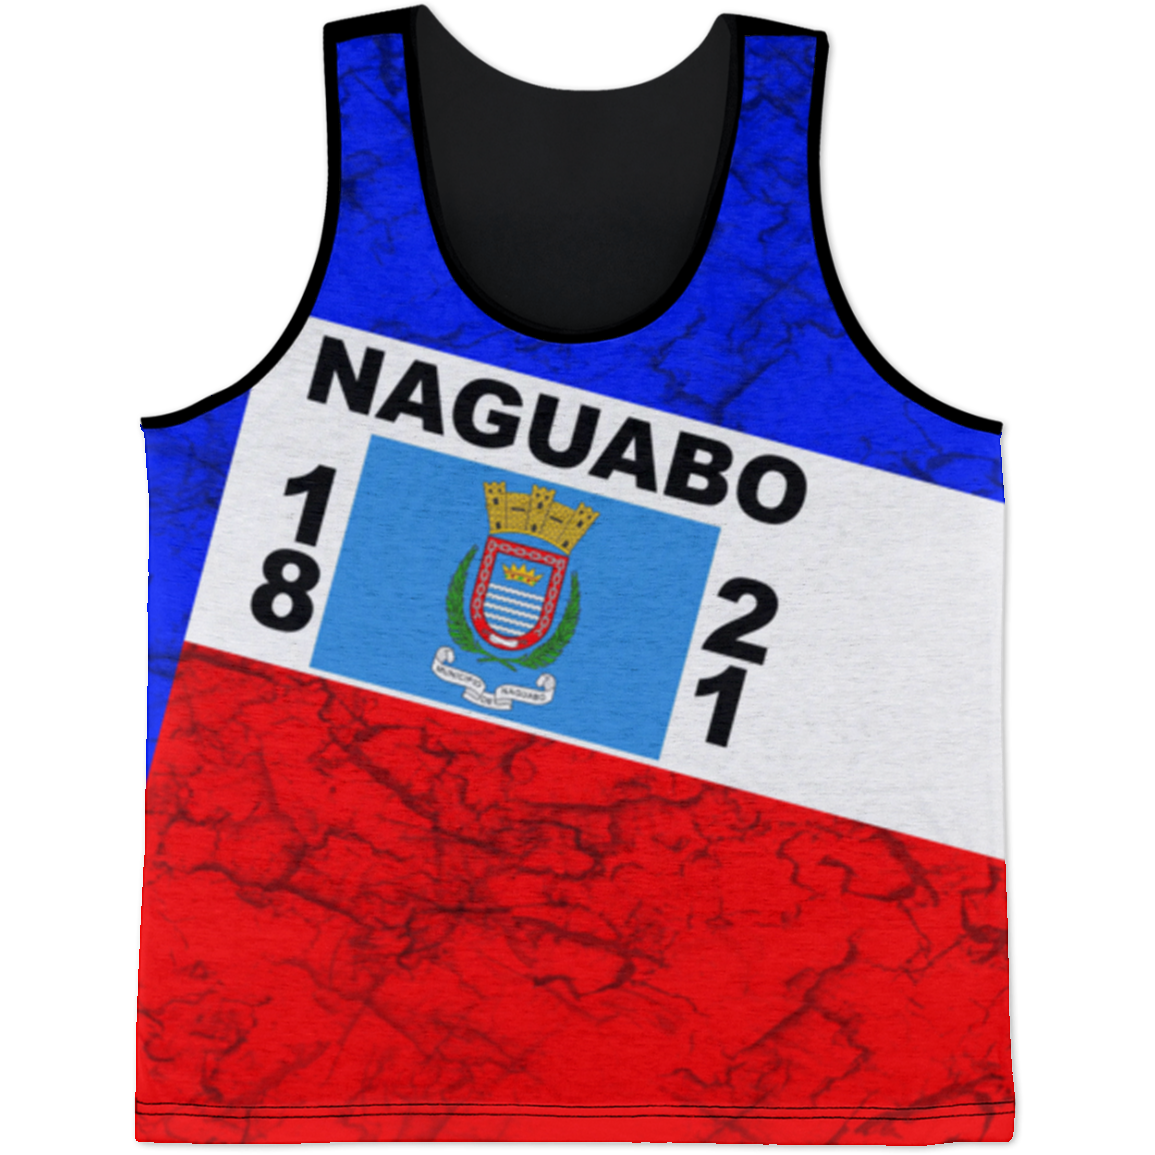 Naguabo Tank Top - Puerto Rican Pride